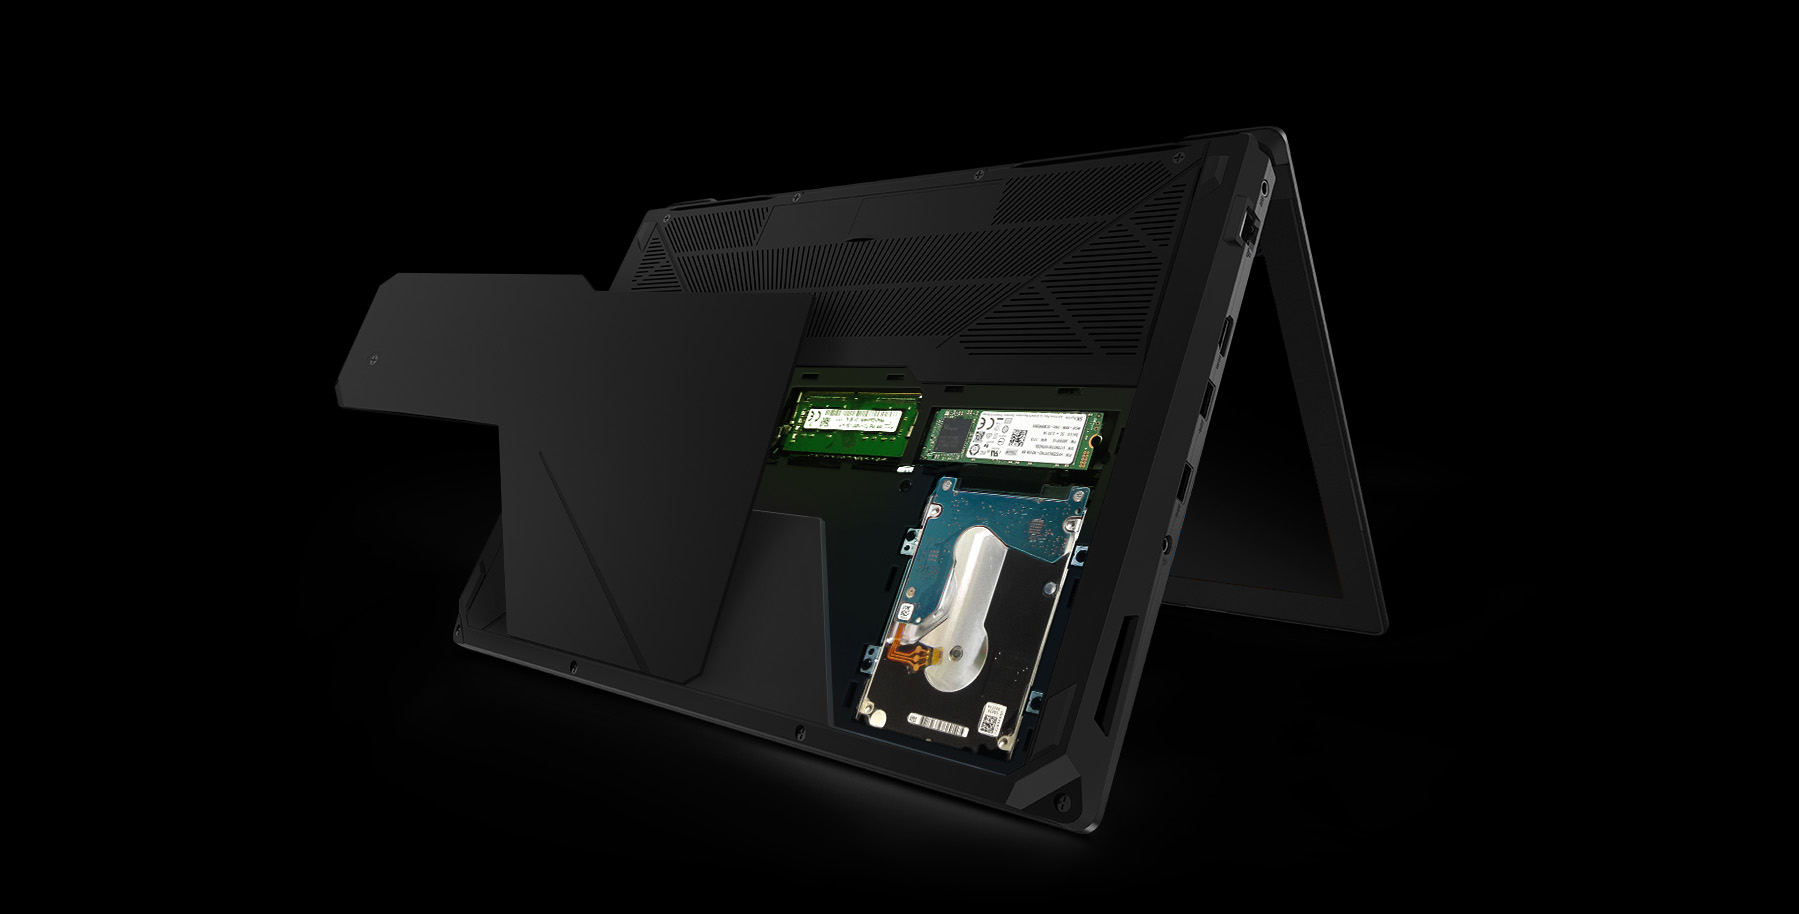 Máy xách tay/ Laptop Asus FX503VD-E4082T (I5-7300HQ) (Đen) (Laptop)